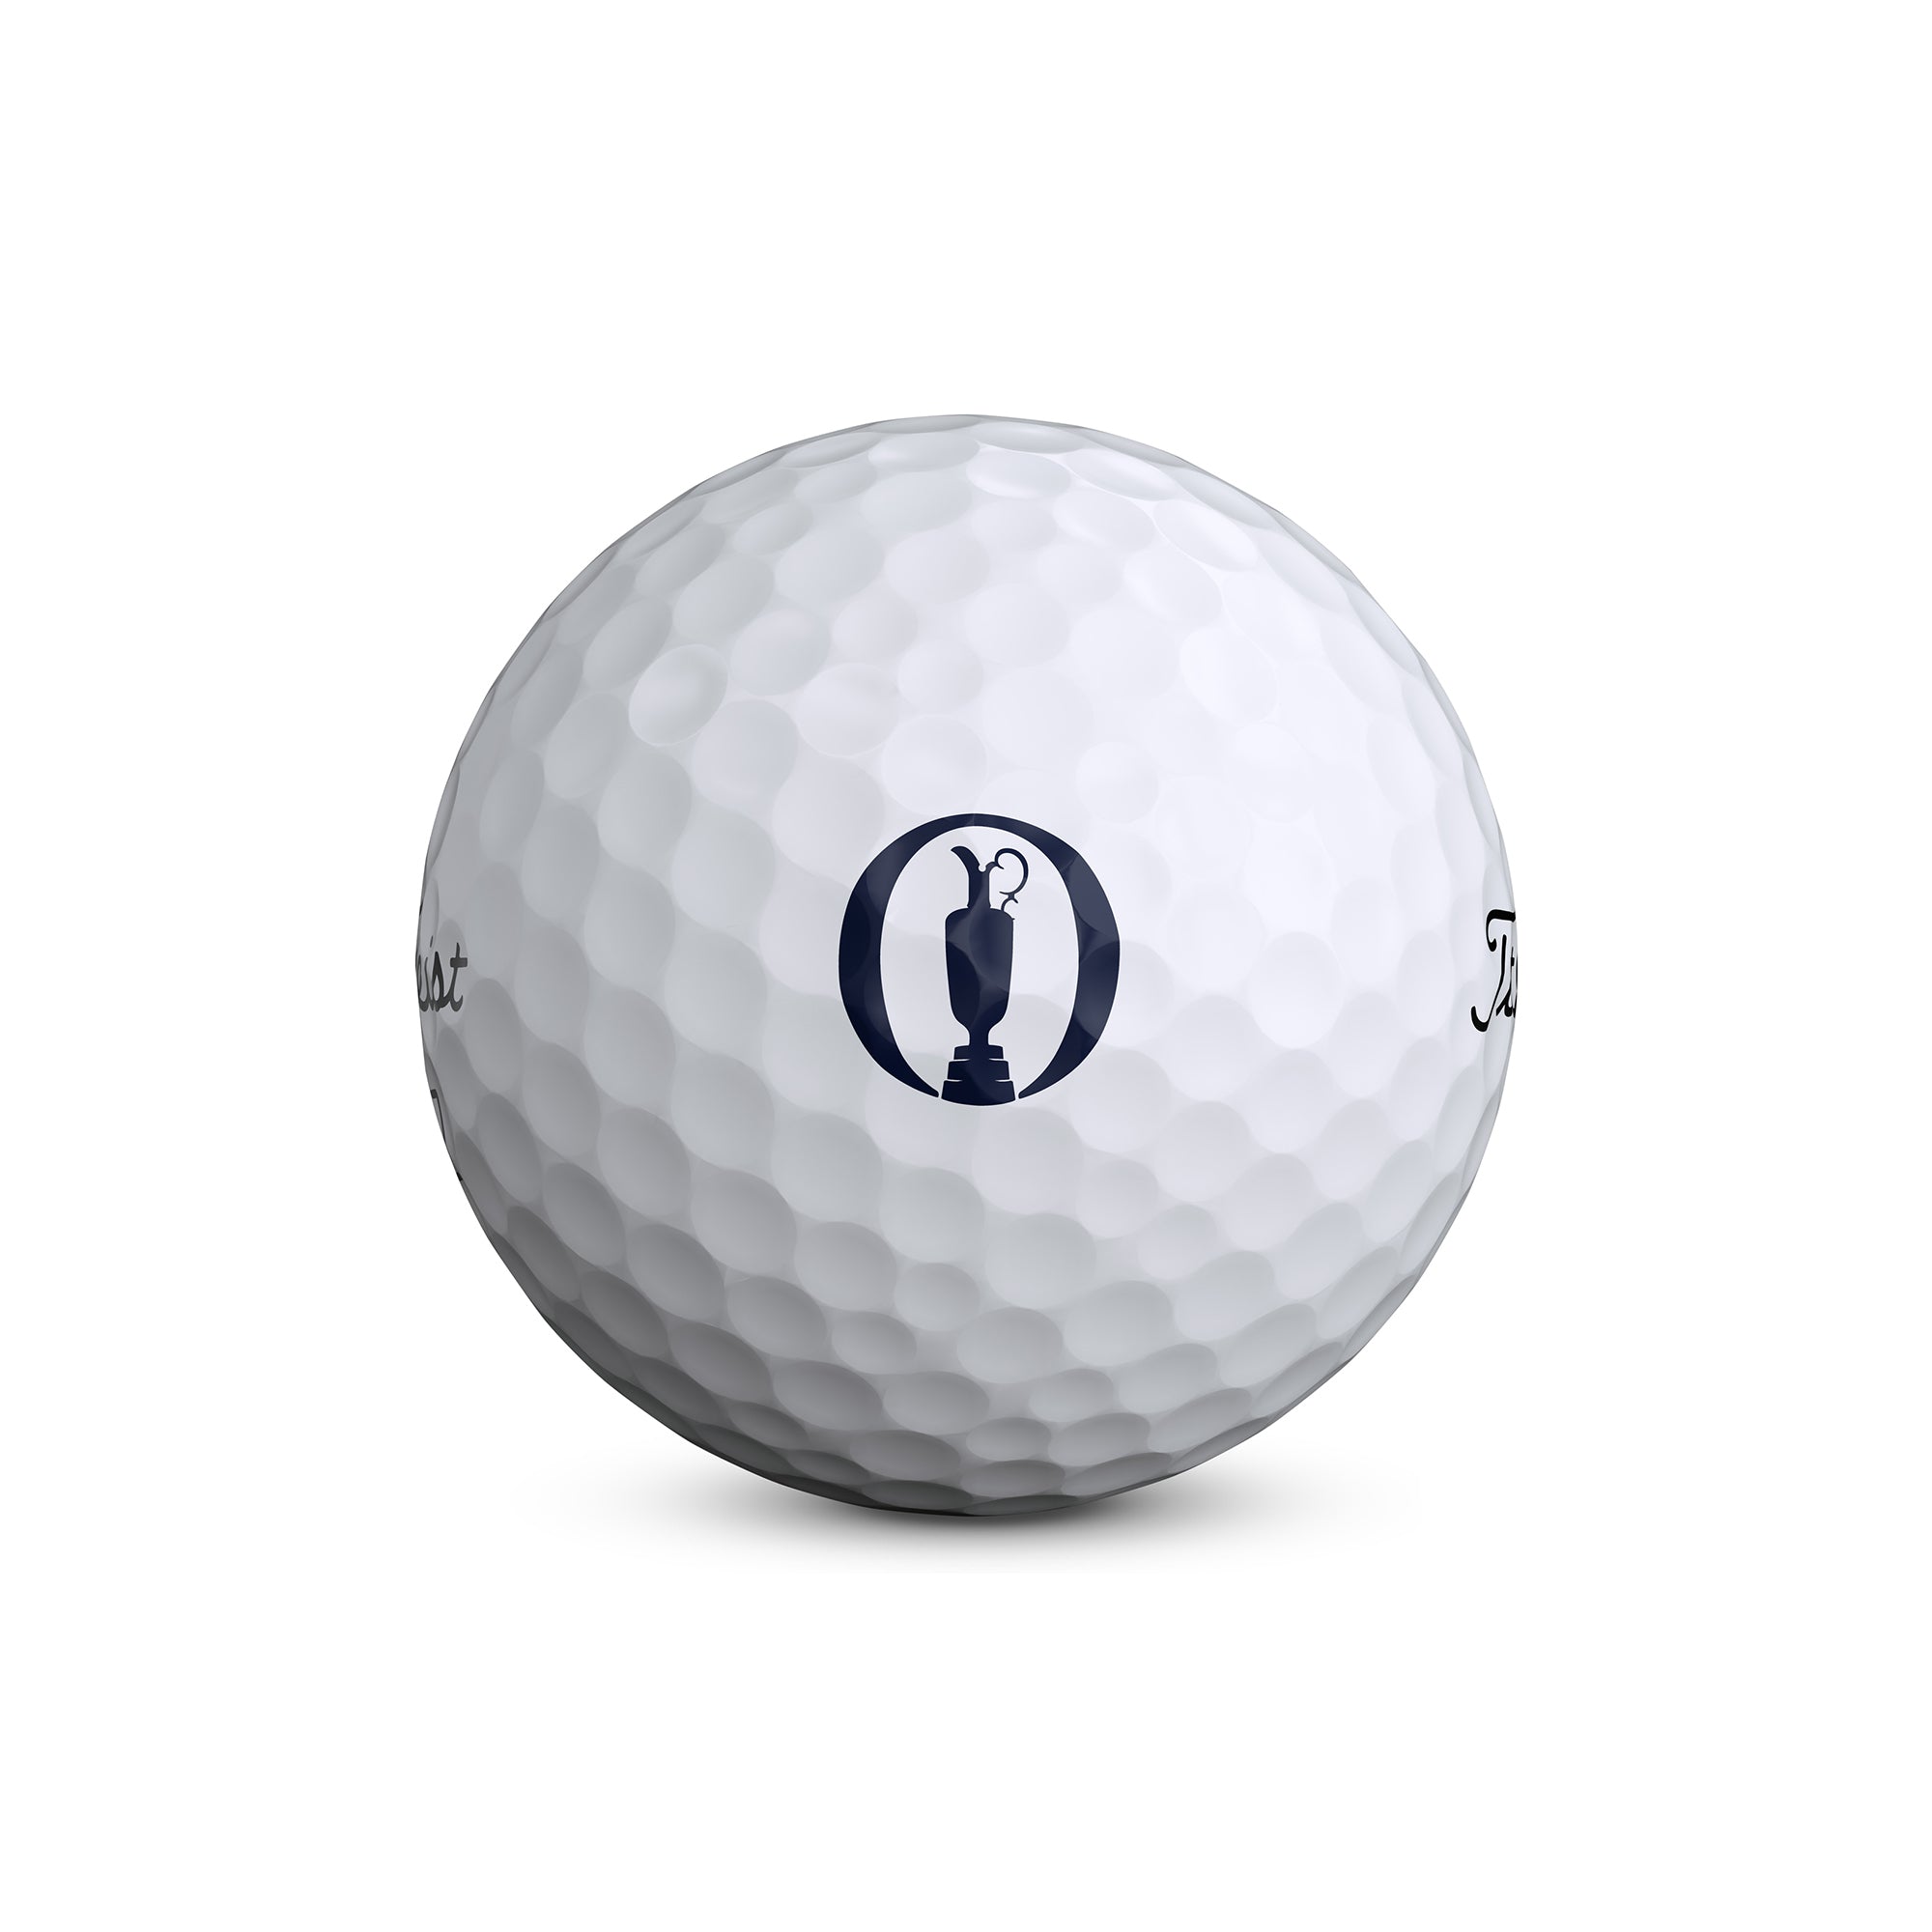 titleist-pro-v1-open-le-golf-balls-t2028s-6poc23-white